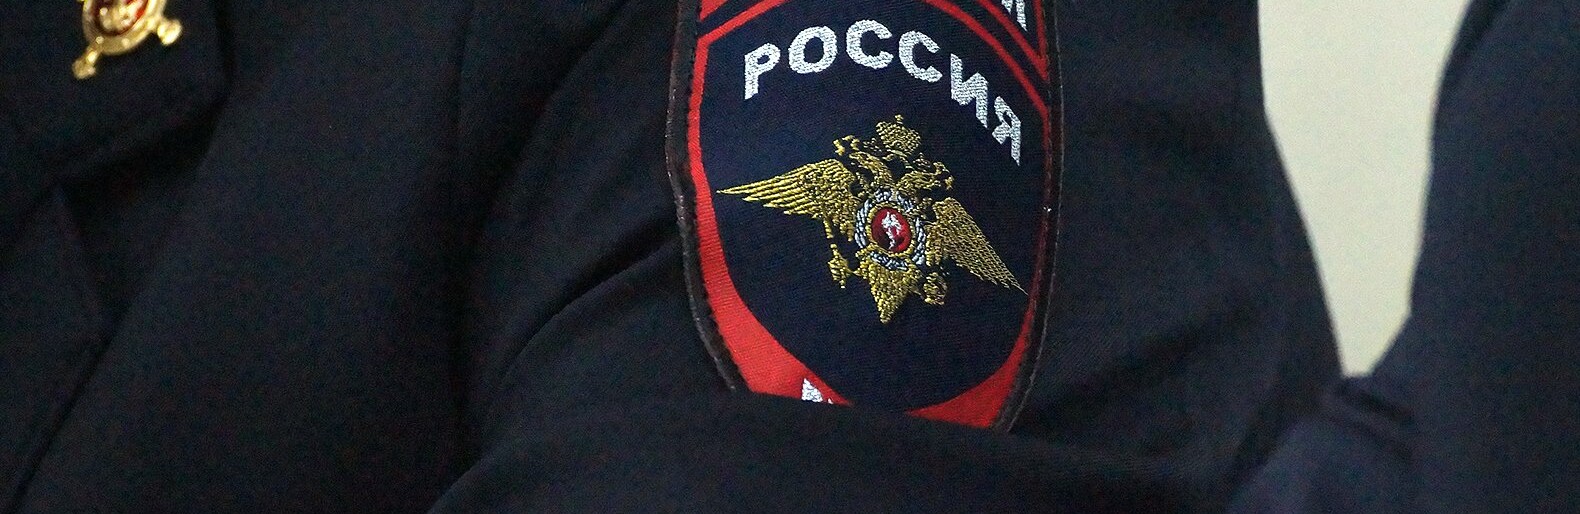 Начальника райотдела полиции в Белгородской области понизят в должности или уволят